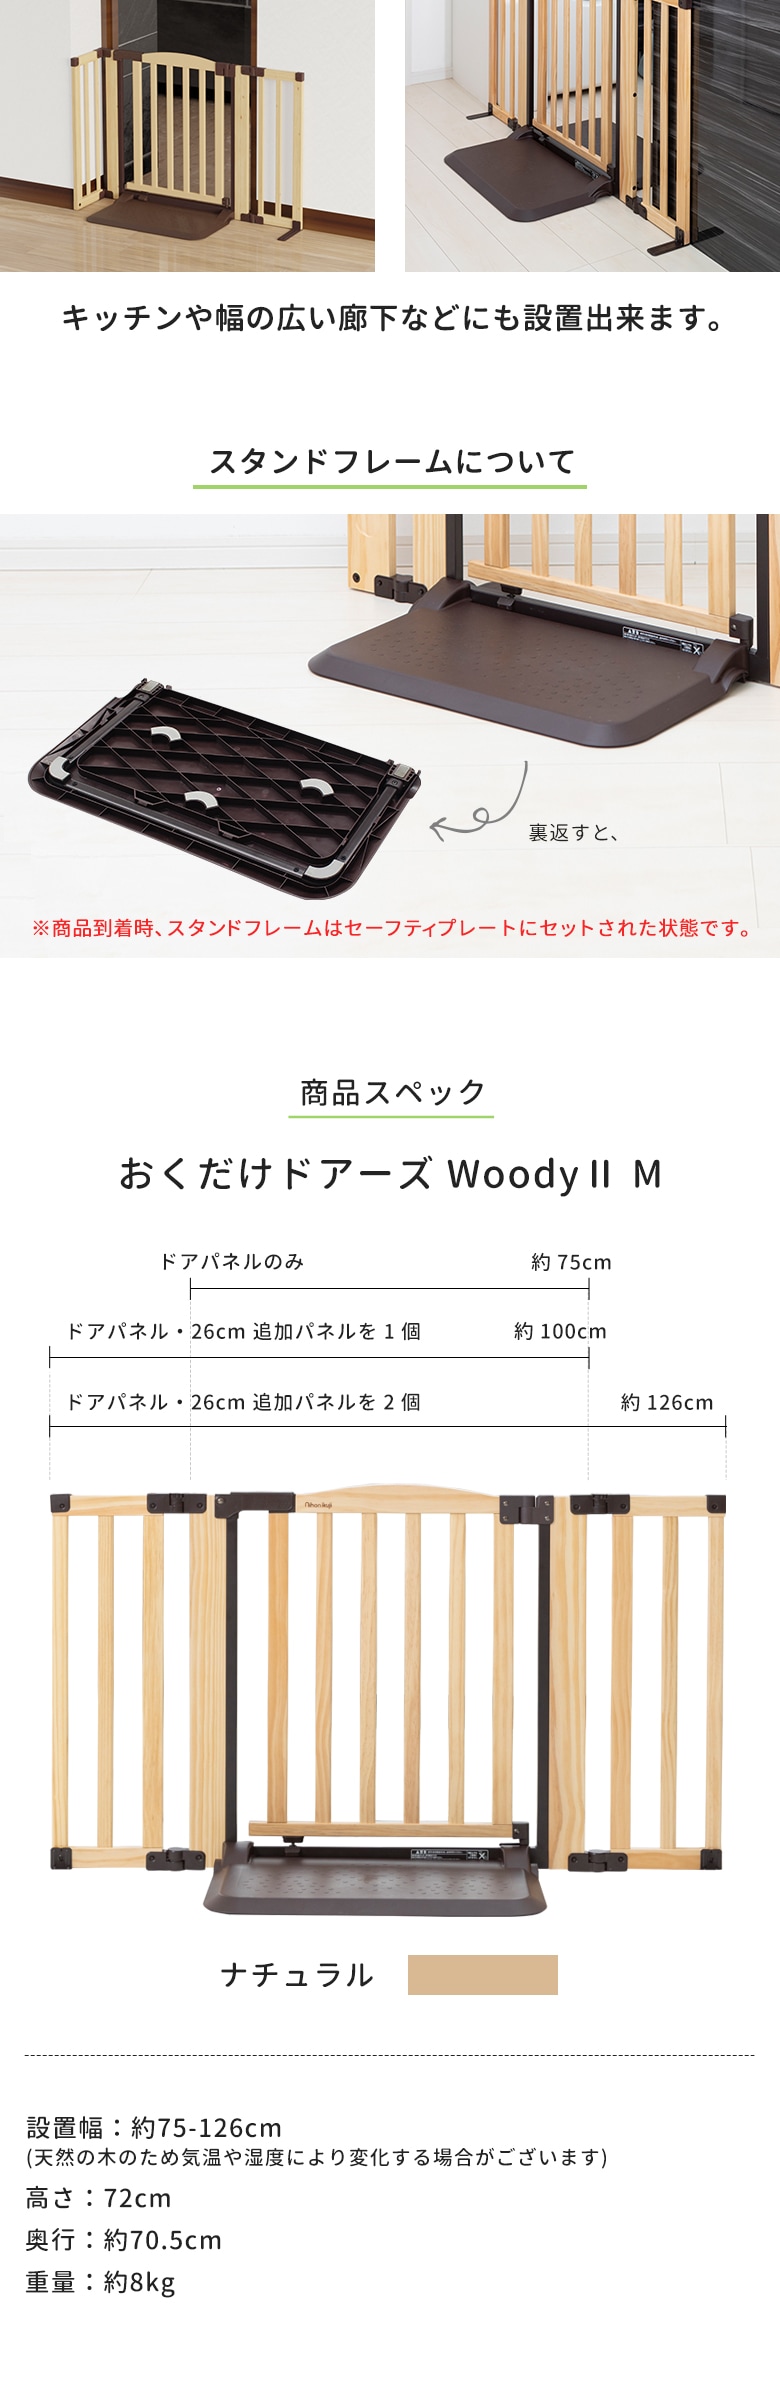 日本育児　おくだけドアーズWoodyⅡ Mサイズ すべり止めマット付き nihonikuji-日本育児公式オンラインショップ eBaby-Select